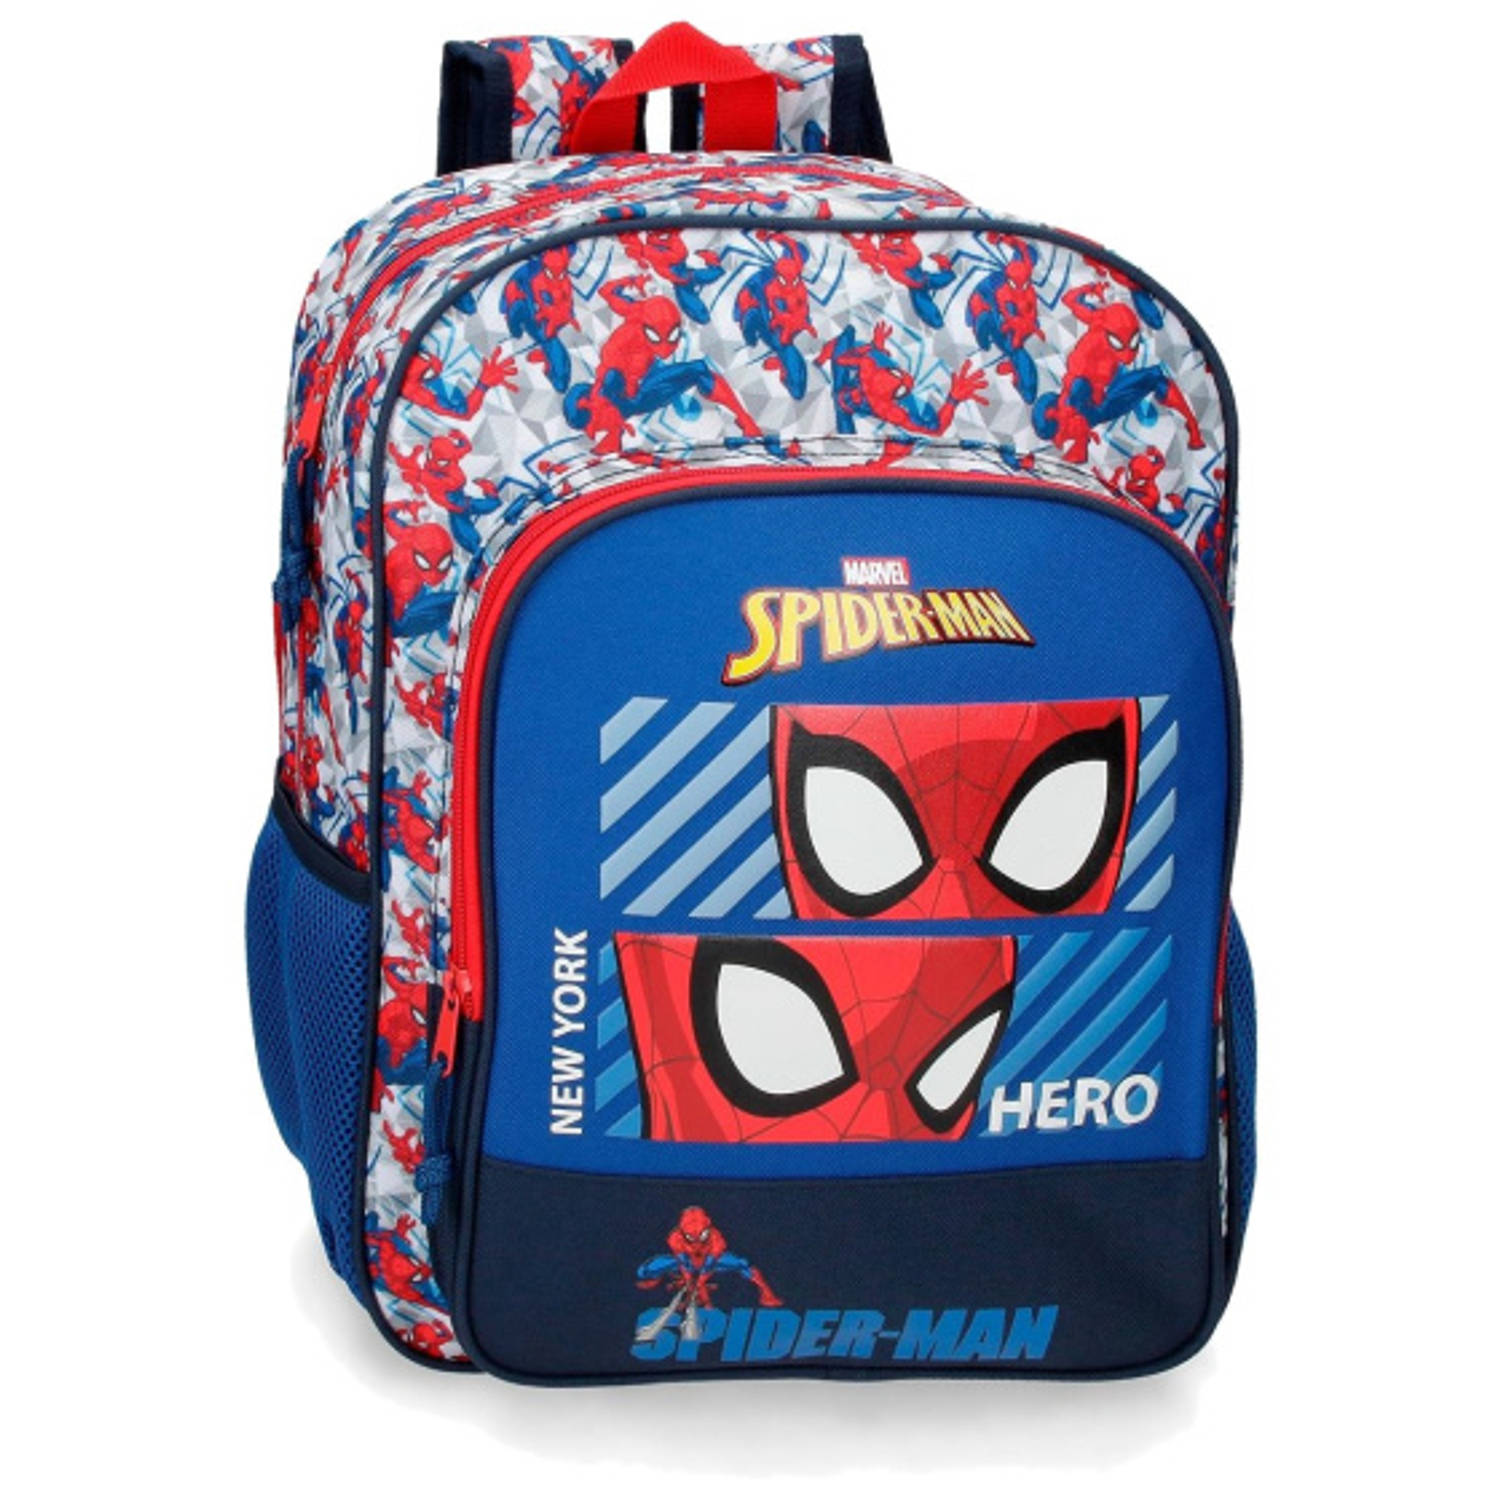 Spider-man Hero rugzak junior blauw-rood